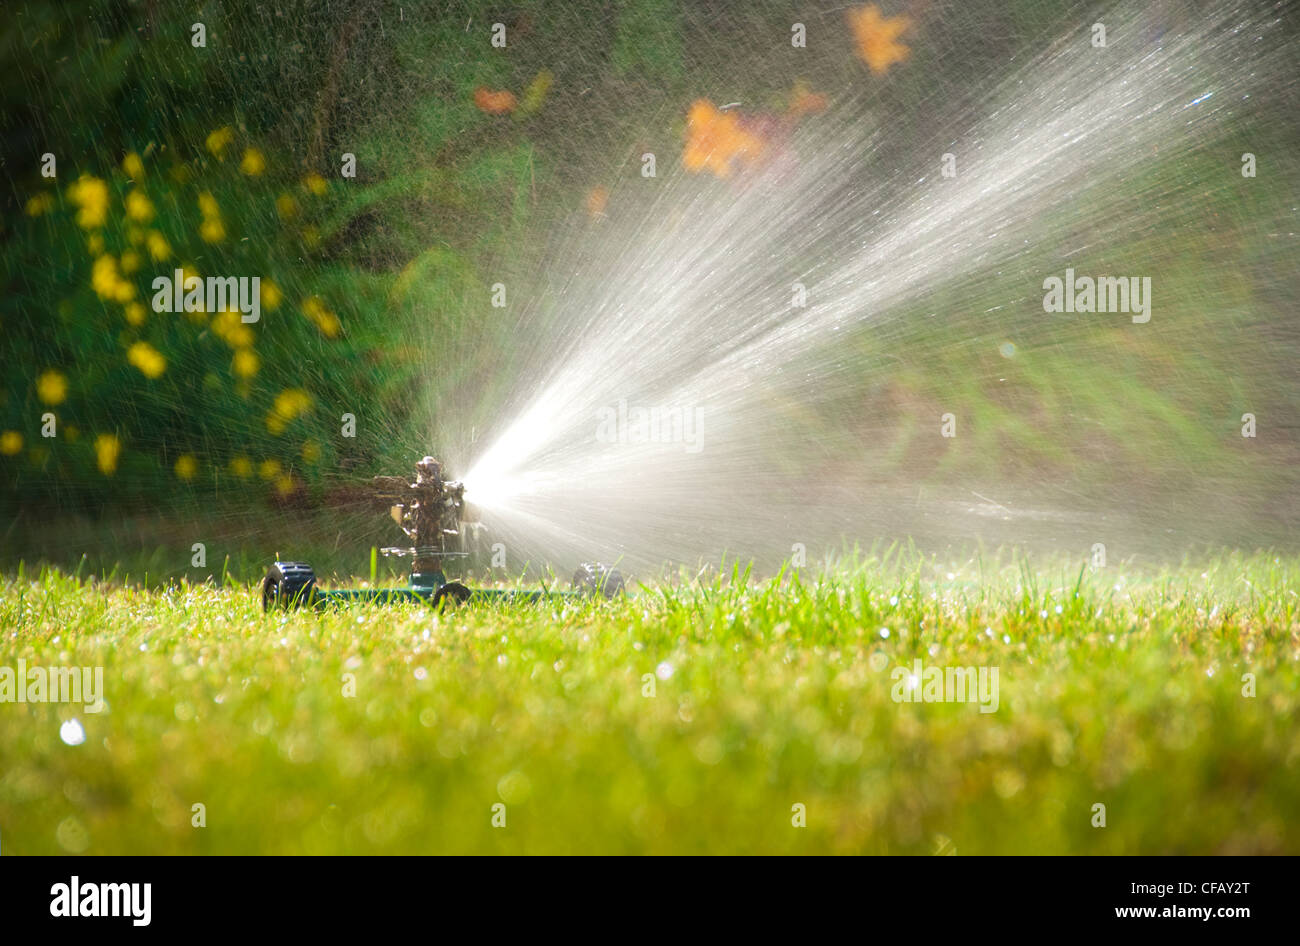 Sprinkler watering summer lawn Stock Photo